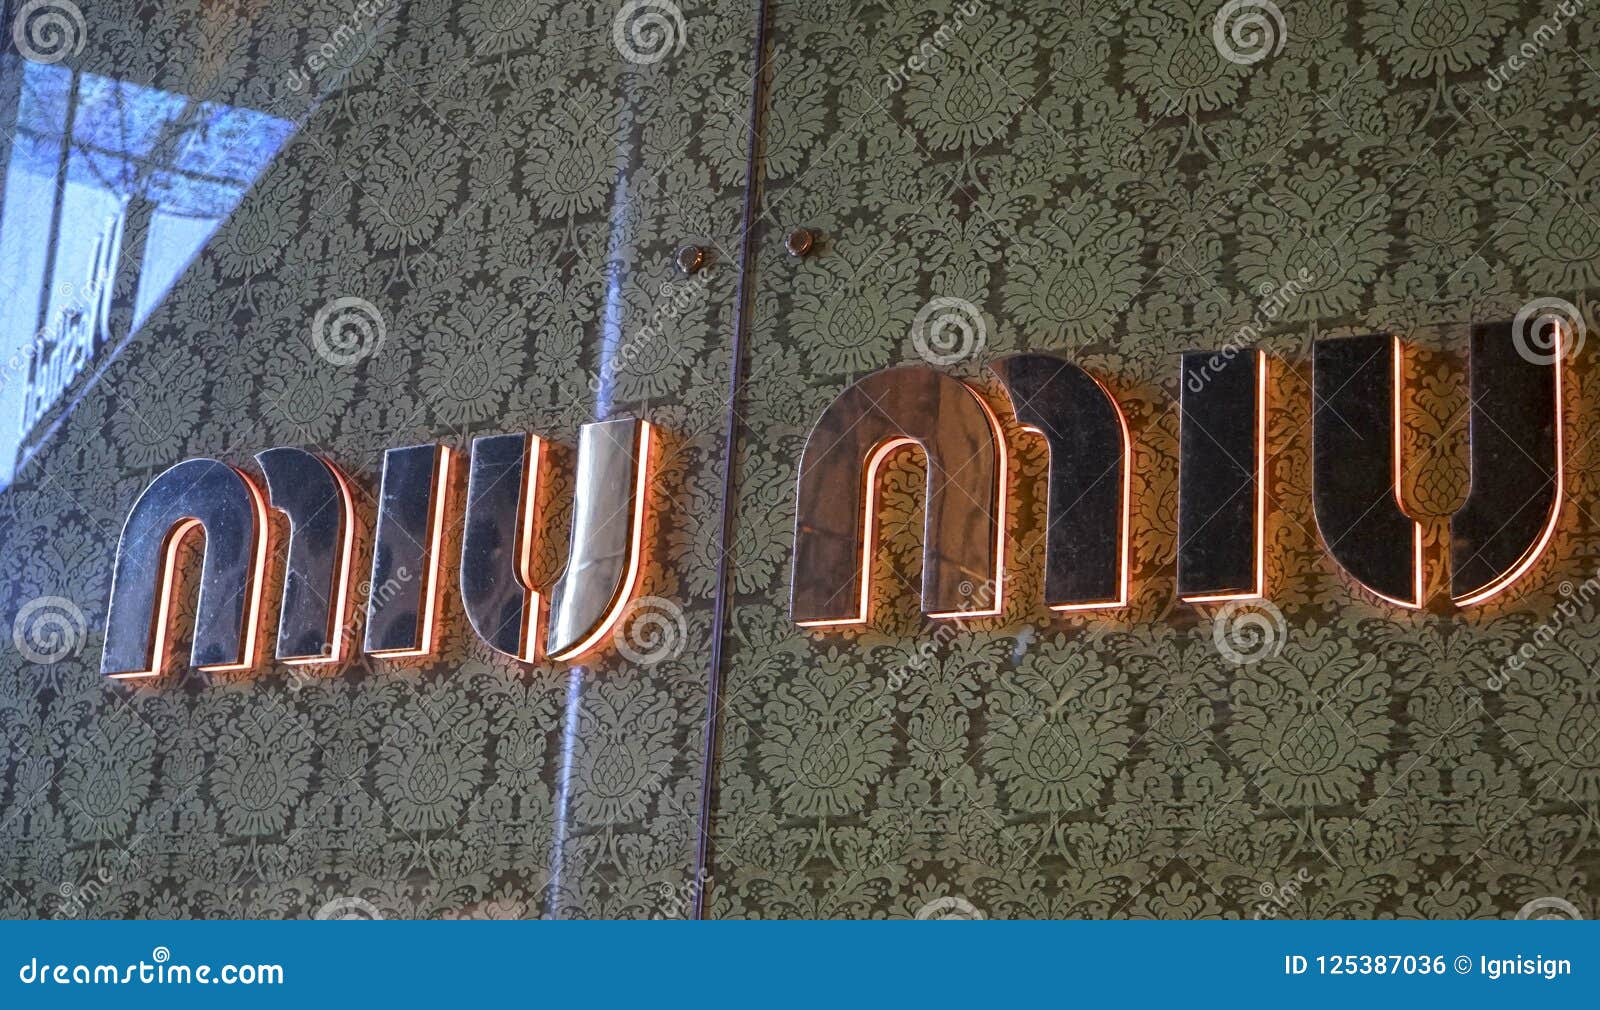 Miu Miu Store Logo in Sydney Editorial Photo - Image of label, building ...